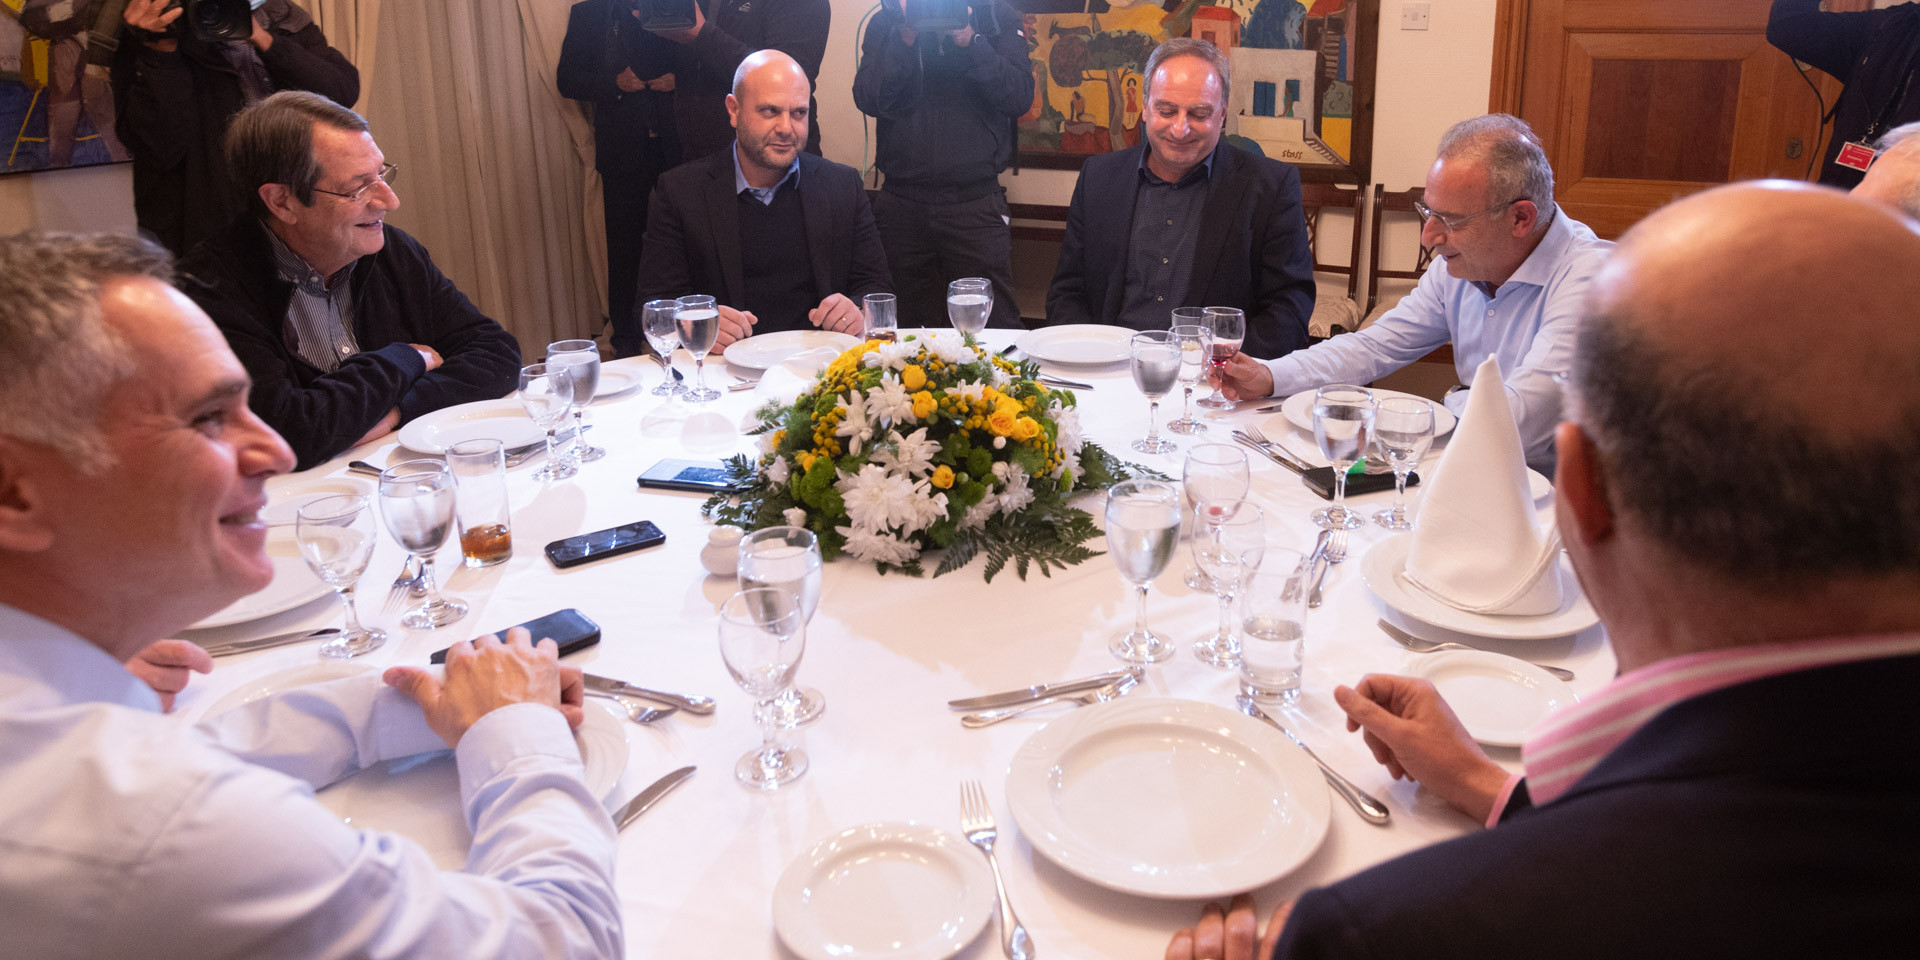 Ικανοποιήθηκε ο ΠτΔ από το δείπνο με τους αρχηγούς: Θίχτηκαν θέματα που αφορούν τις μεταρρυθμίσεις 